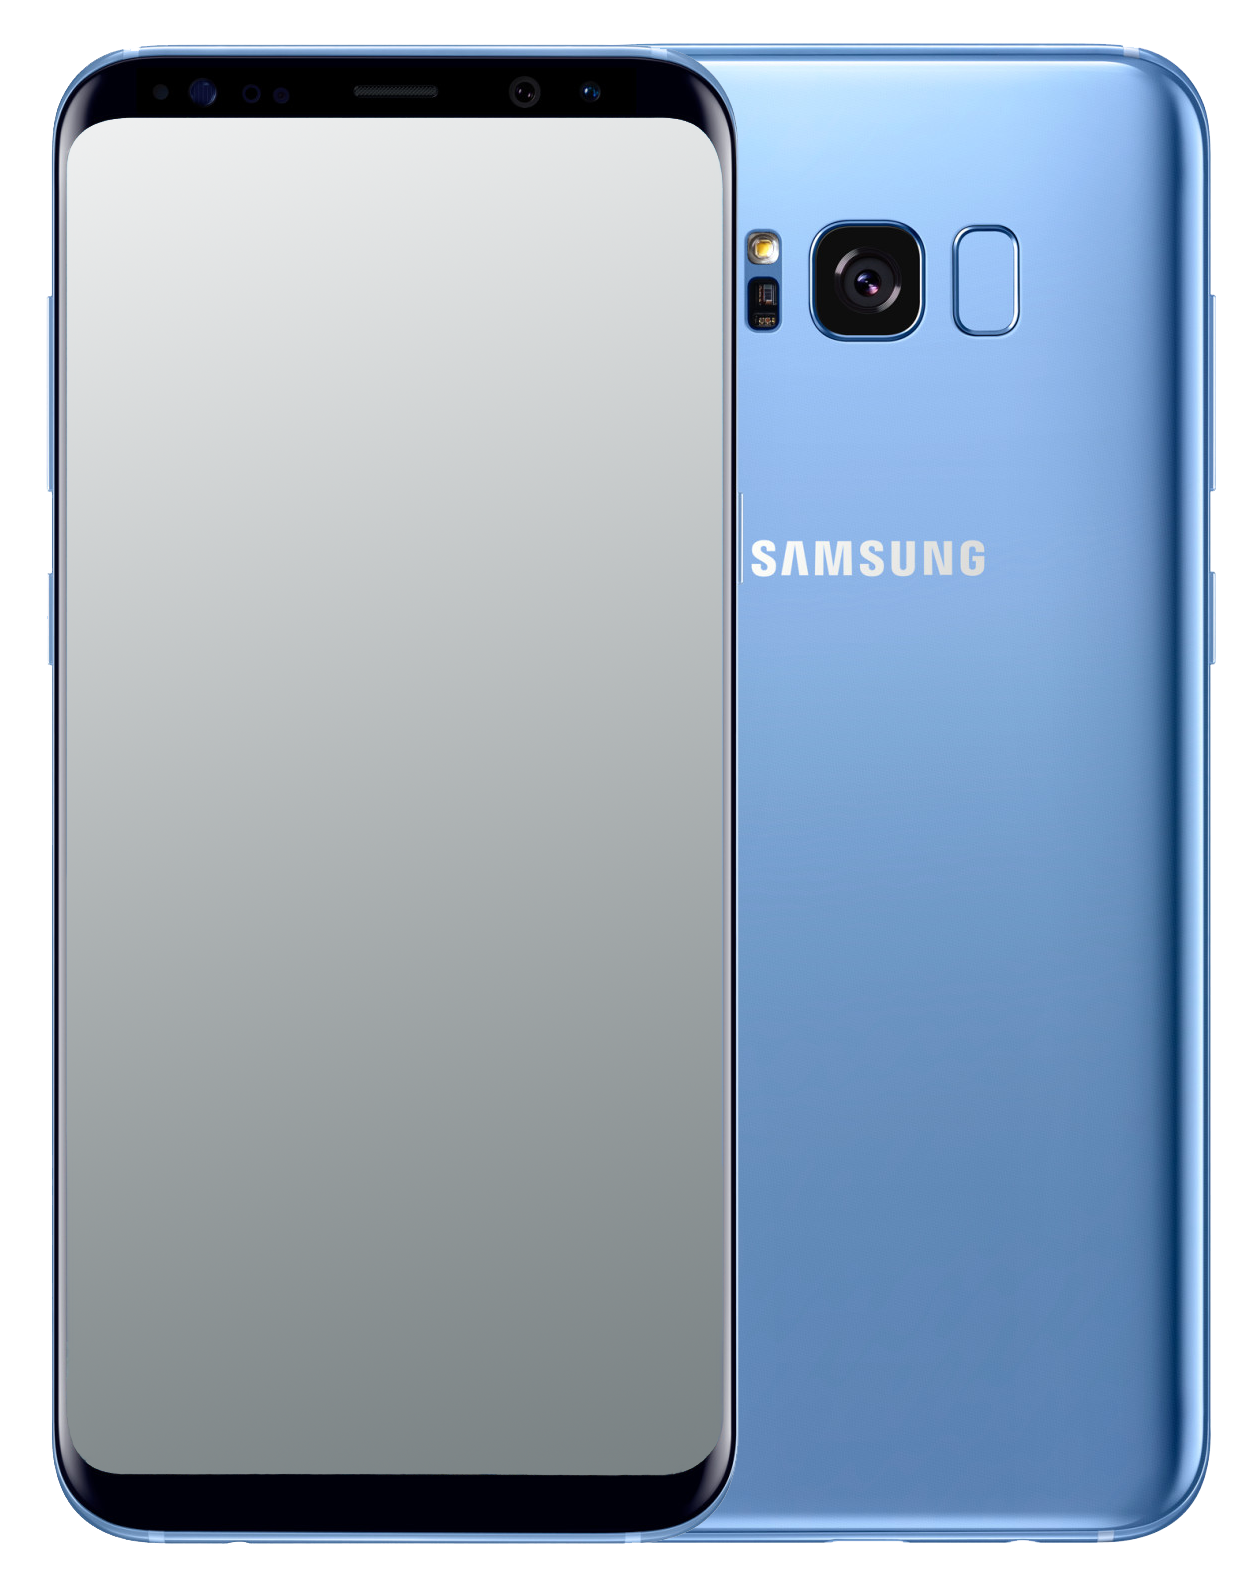 Samsung Galaxy S8+ Single-SIM blau - Ohne Vertrag